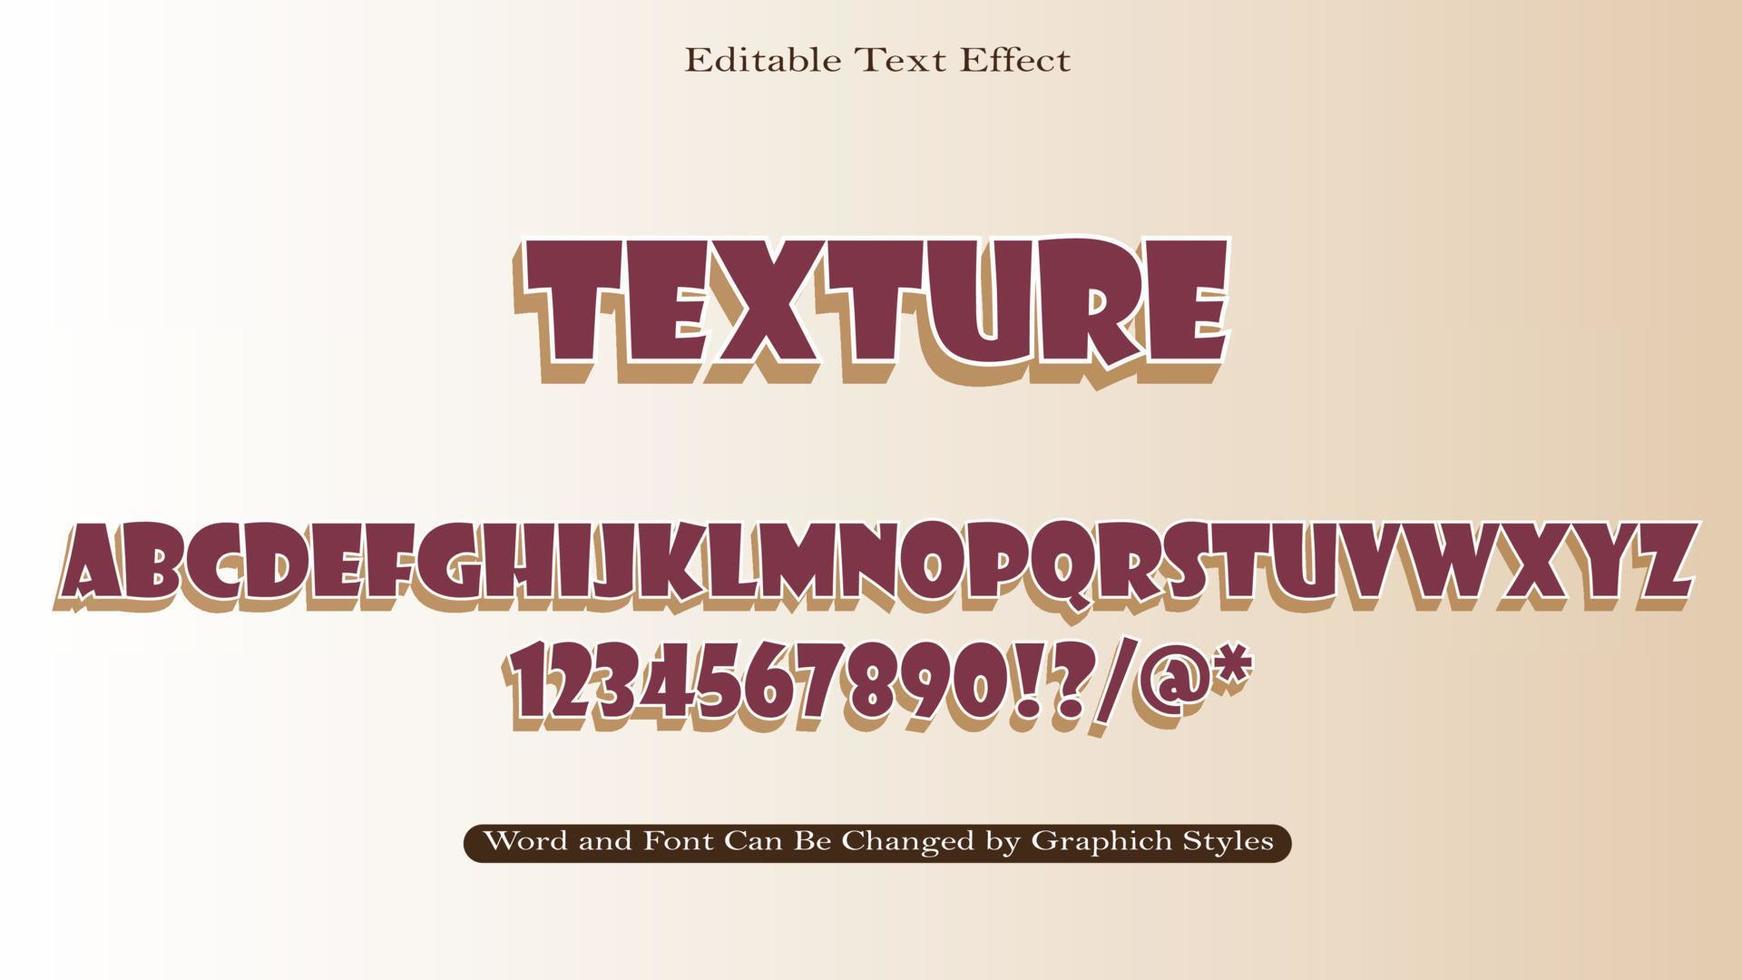 textura 3d editável com efeito de texto alfabético completo vetor